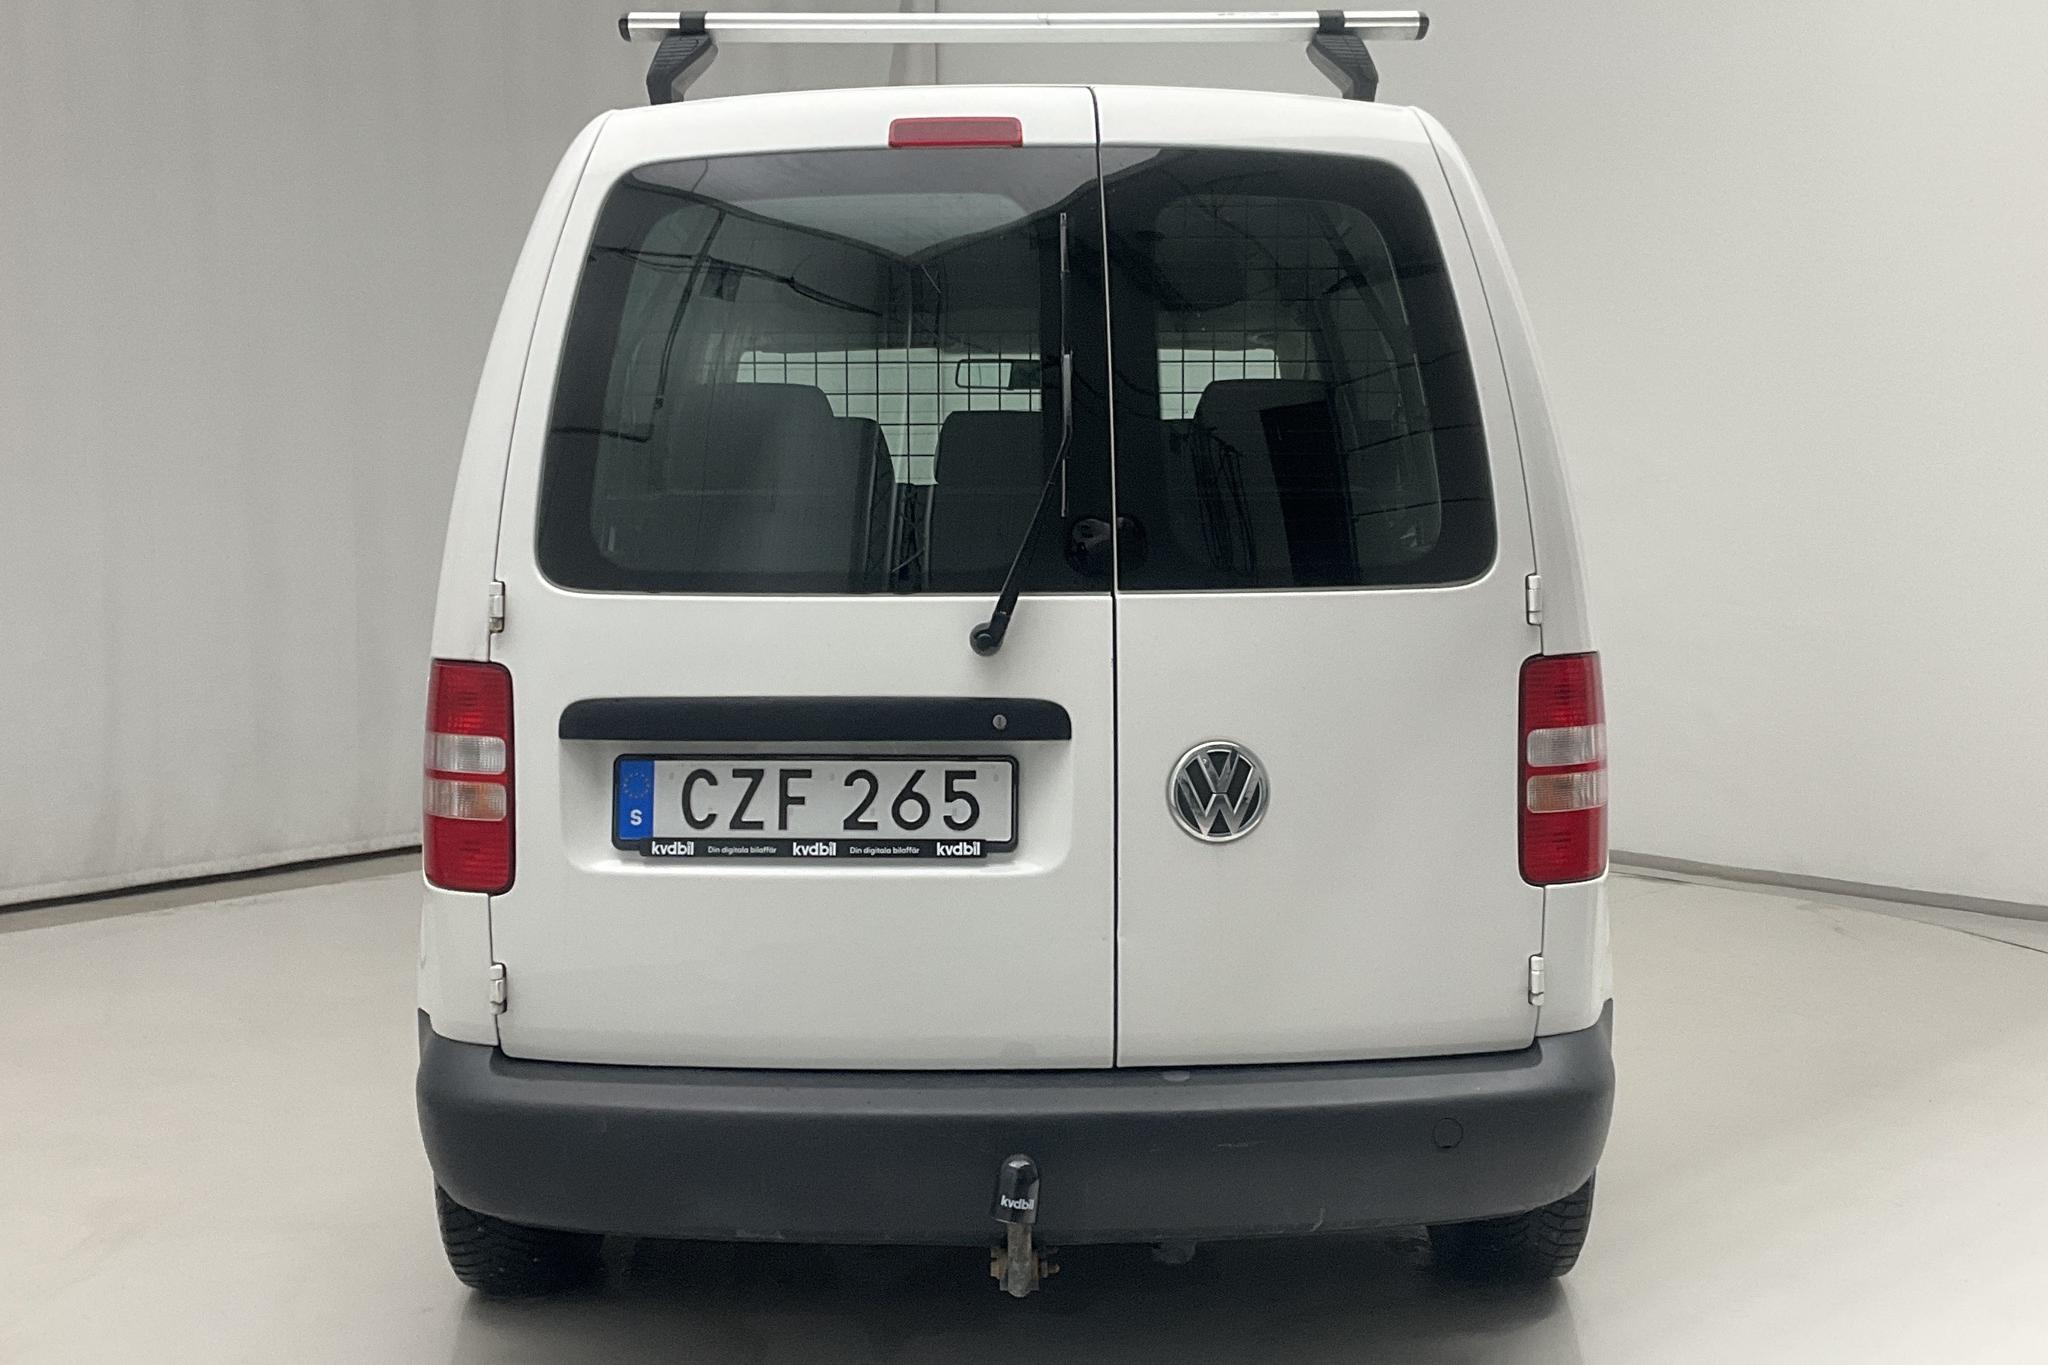 VW Caddy MPV 1.6 TDI (102hk) - 80 590 km - Manual - white - 2014